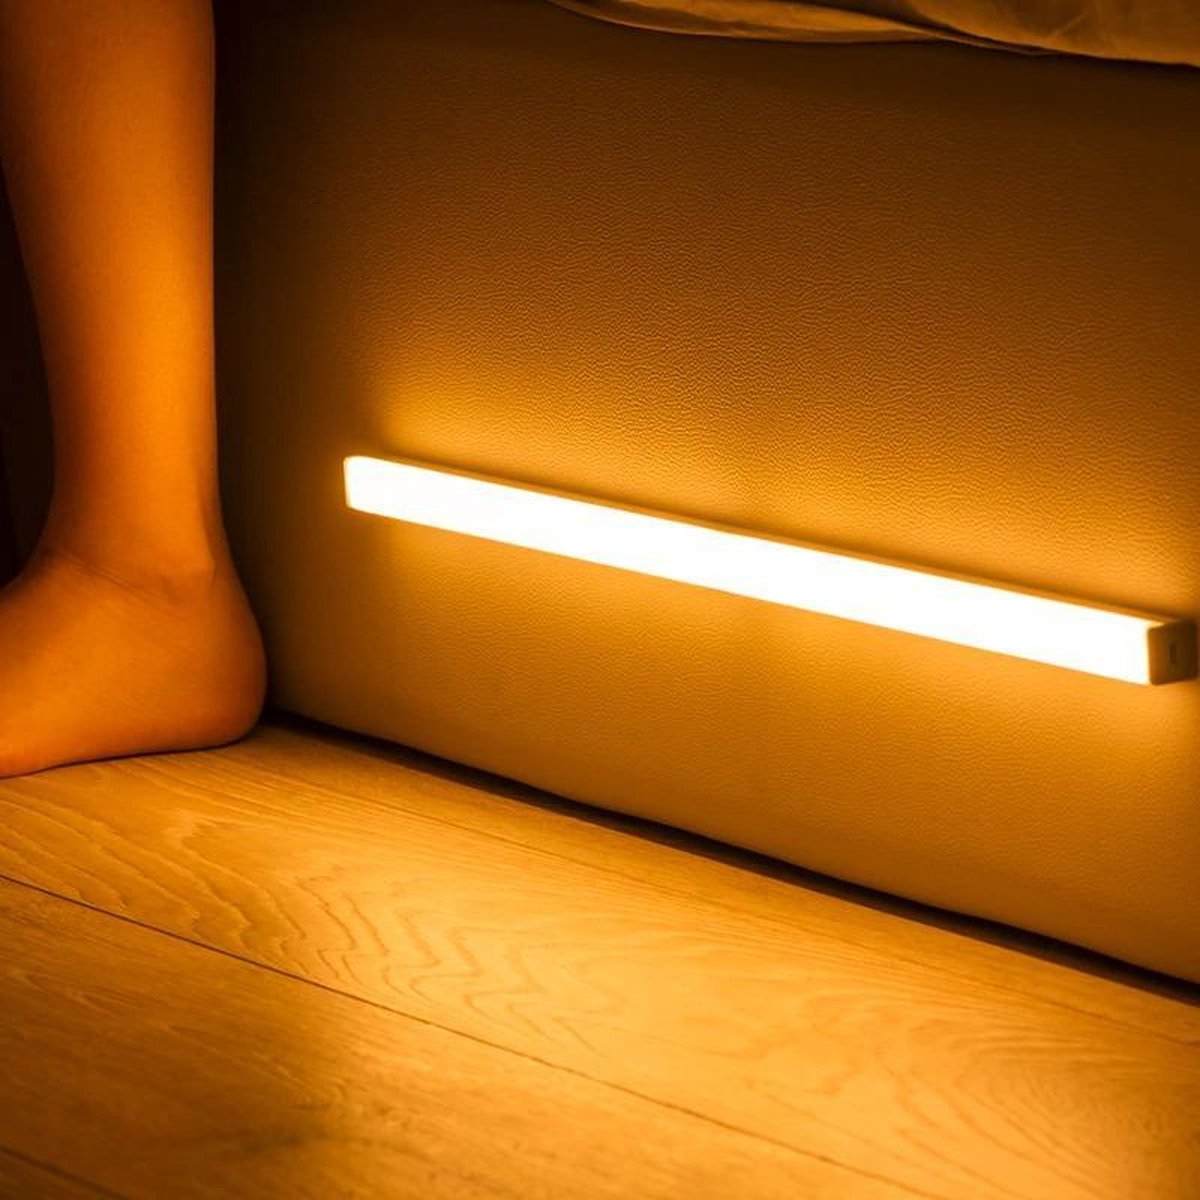 Nachtlamp met Bewegingsensor Inclusief Oplaadkabel - LED Wandlamp Binnen - Warm Wit - Magnetische Montage - 15cm - Warm Wit Licht